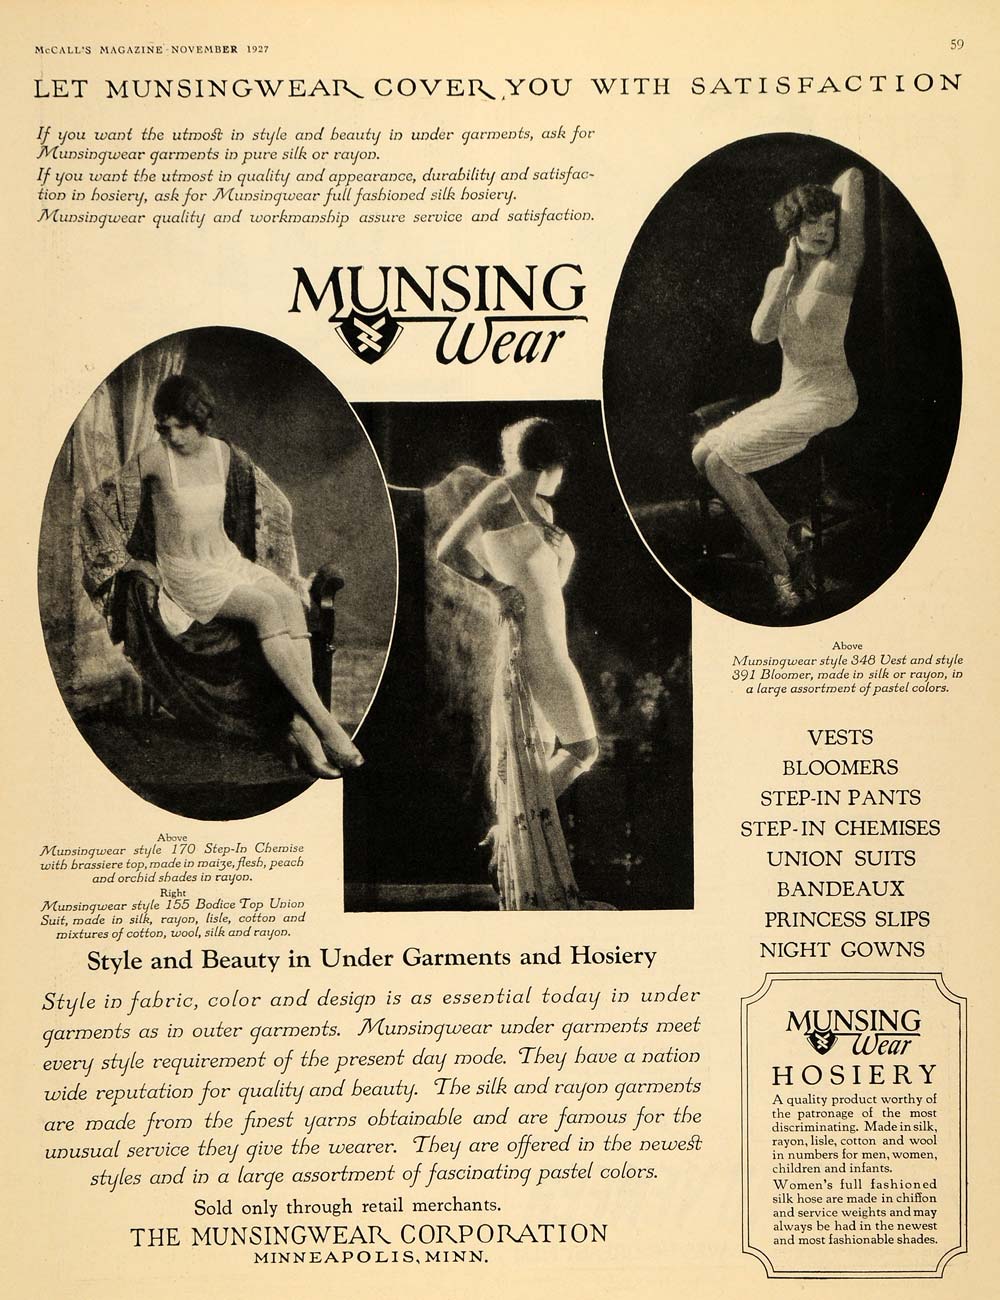 1927 Ad Musingwear Corp. Vest Union Suits Gowns Clothes - ORIGINAL MCC2